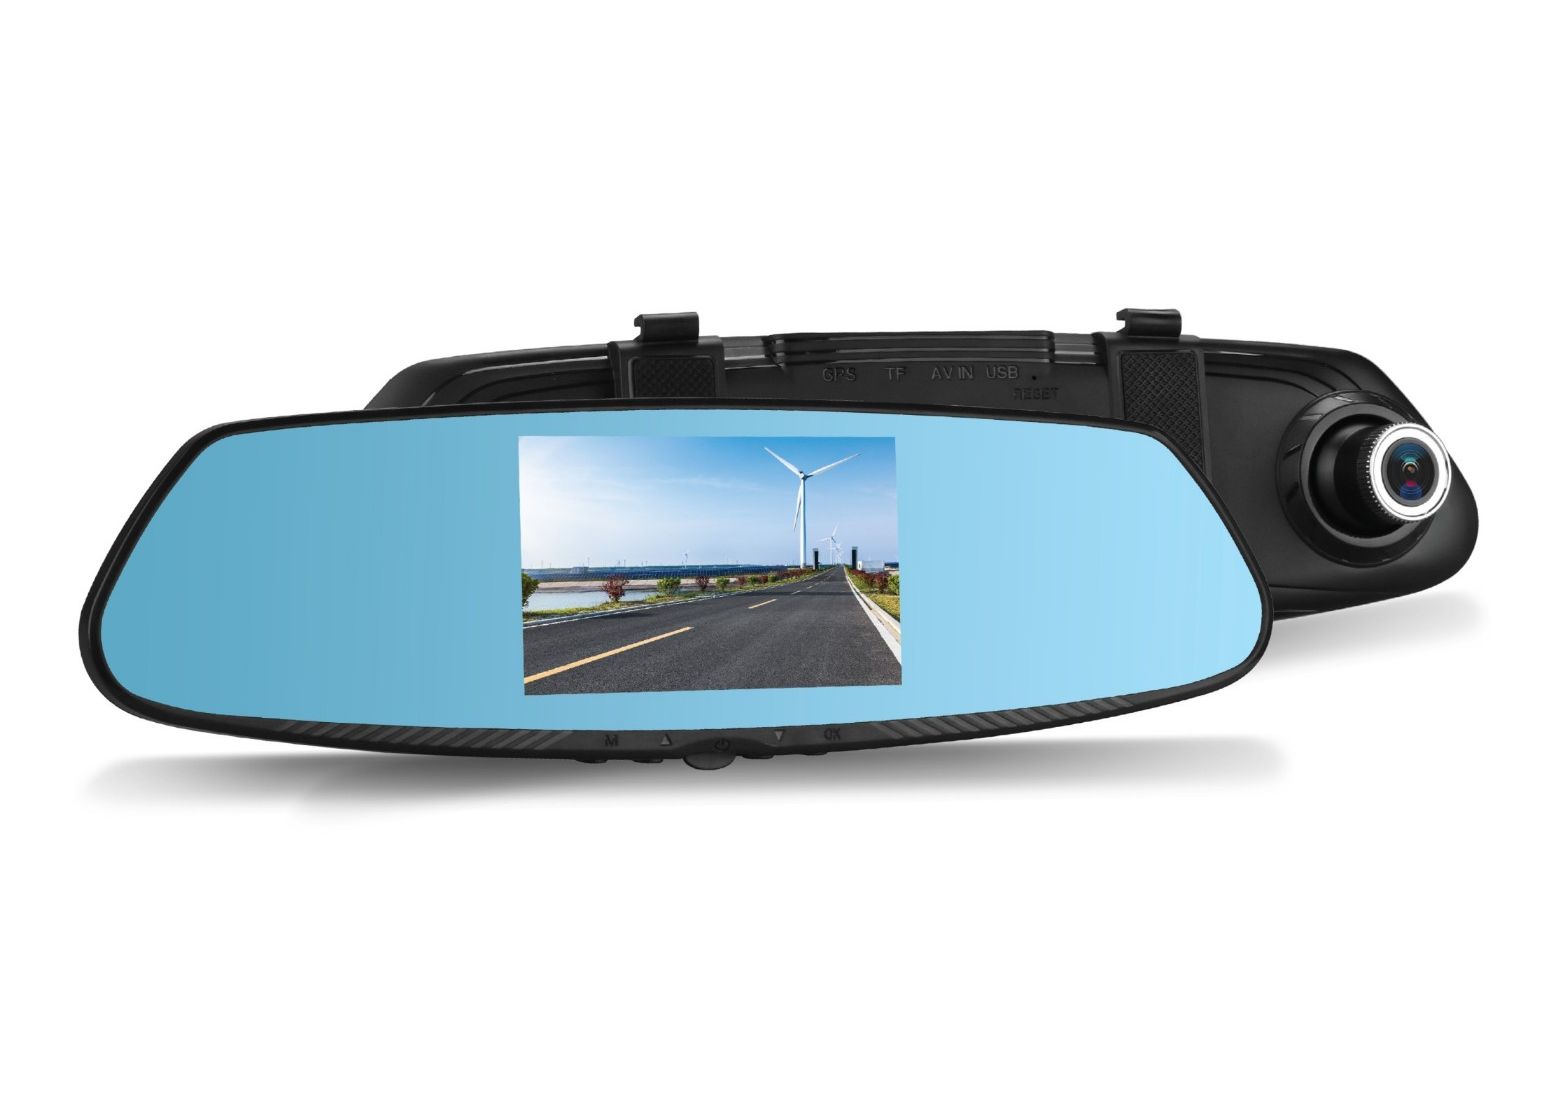 Pachet Oglinda Auto Retrovizoare cu Display 4.3 Camera Video Marsarier si Camera Video DVR Full HD 1080 Vordon pentru Inregistrare Trafic Cel mai complex magazin de produse auto - AutoLux